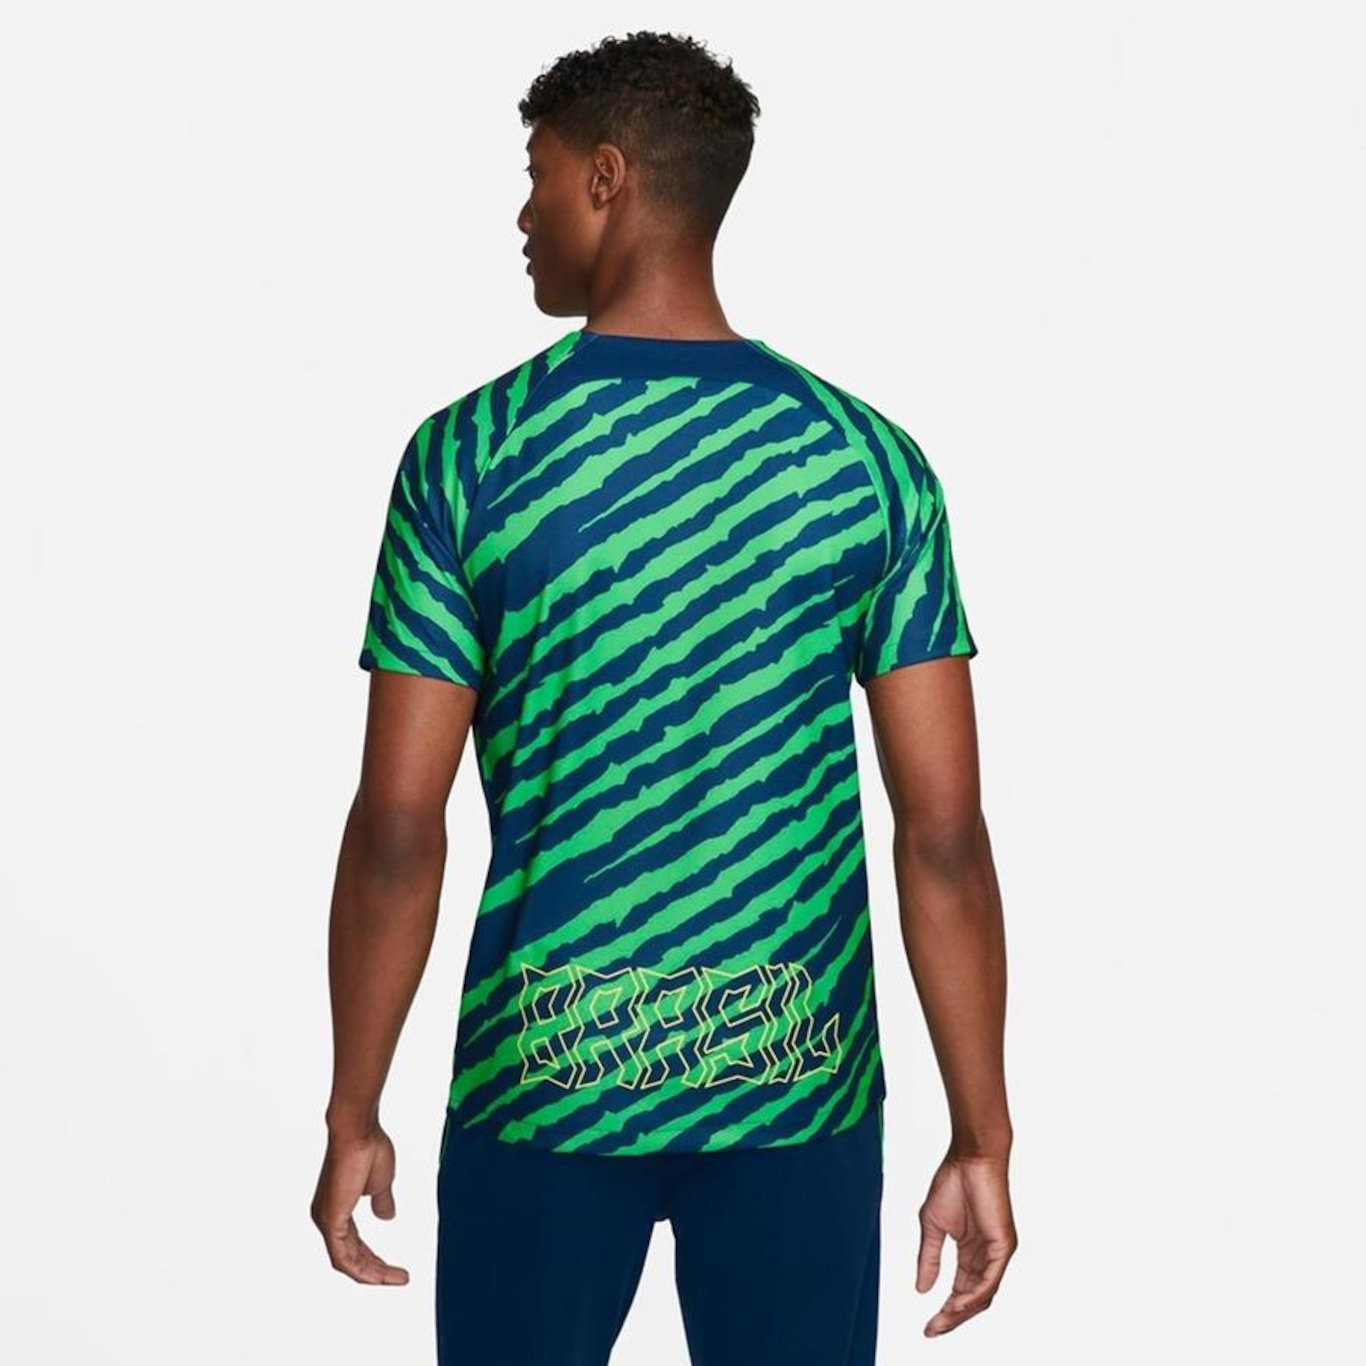 Camiseta Nike Brasil Travel Masculina - Azul